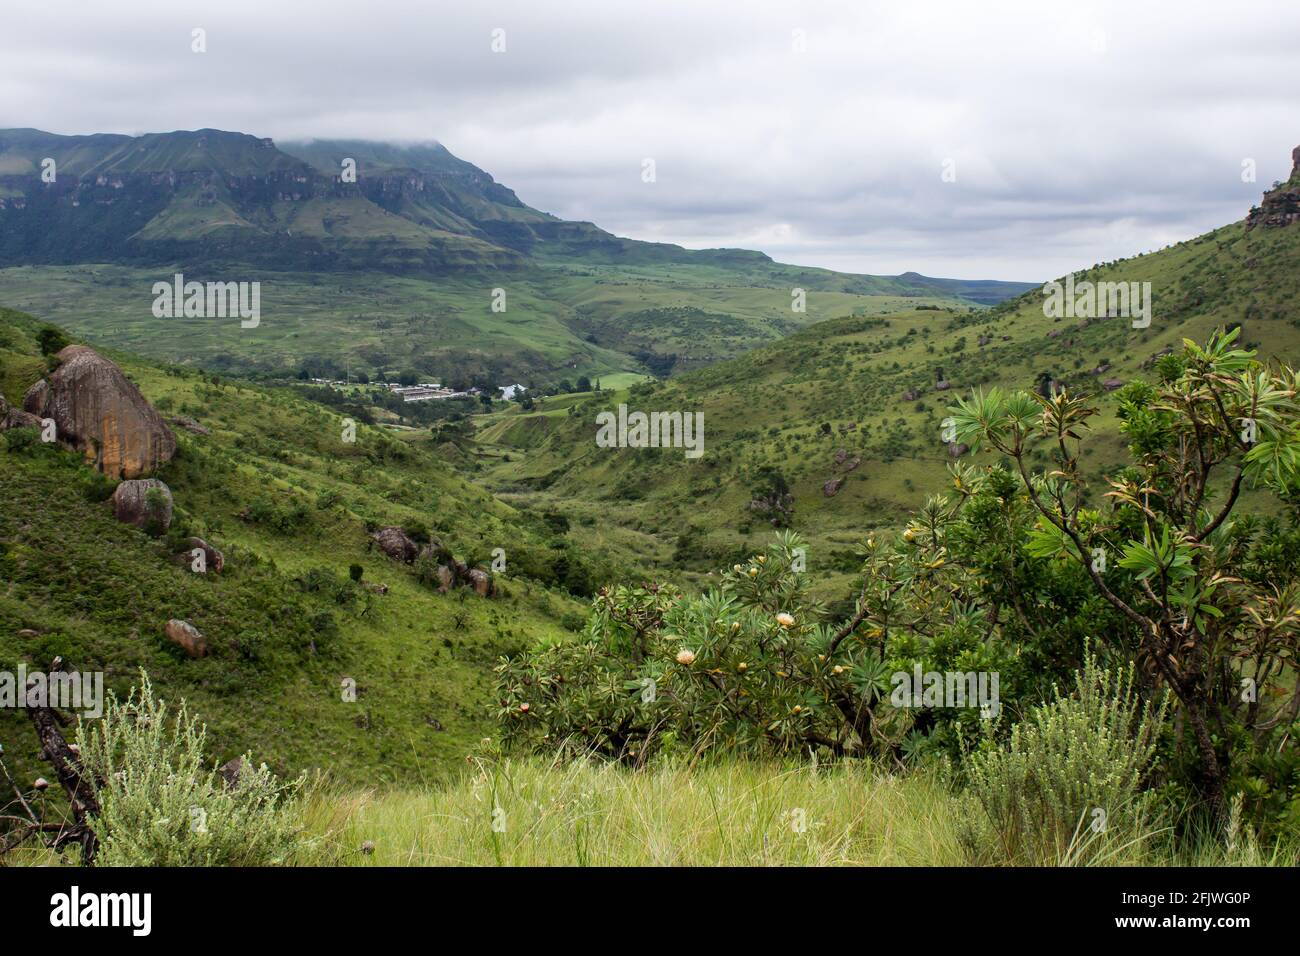 Blick auf einen Ferienort, eingebettet in ein Tal in den Drakensberg-Bergen Südafrikas, mit Zuckerbuschproteinen im Vordergrund Stockfoto